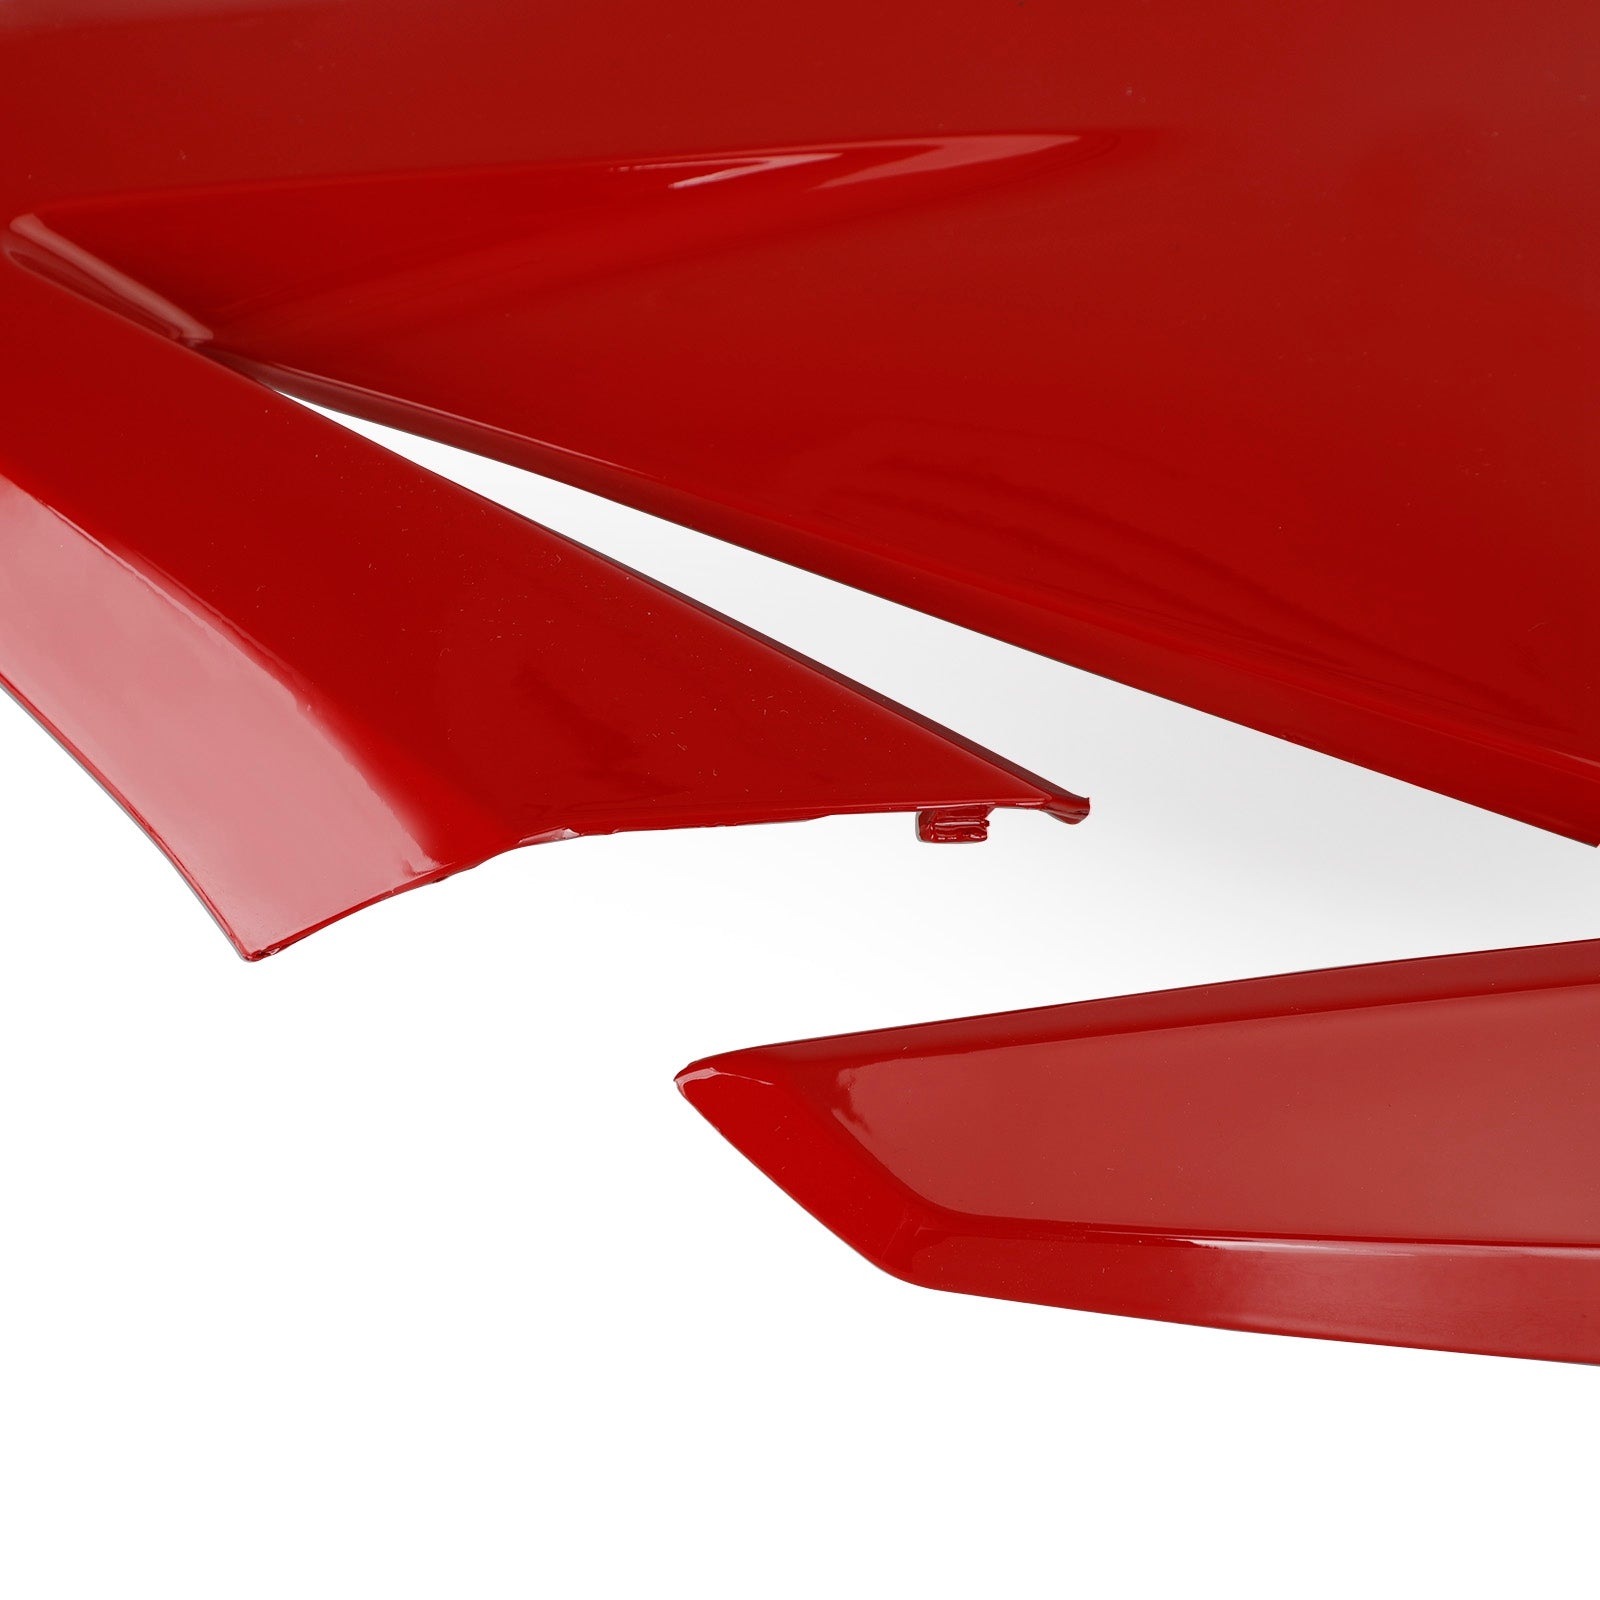 Side frame Panel Cover Fairing Cowl for Honda CBR500R 2019-2021 Generic